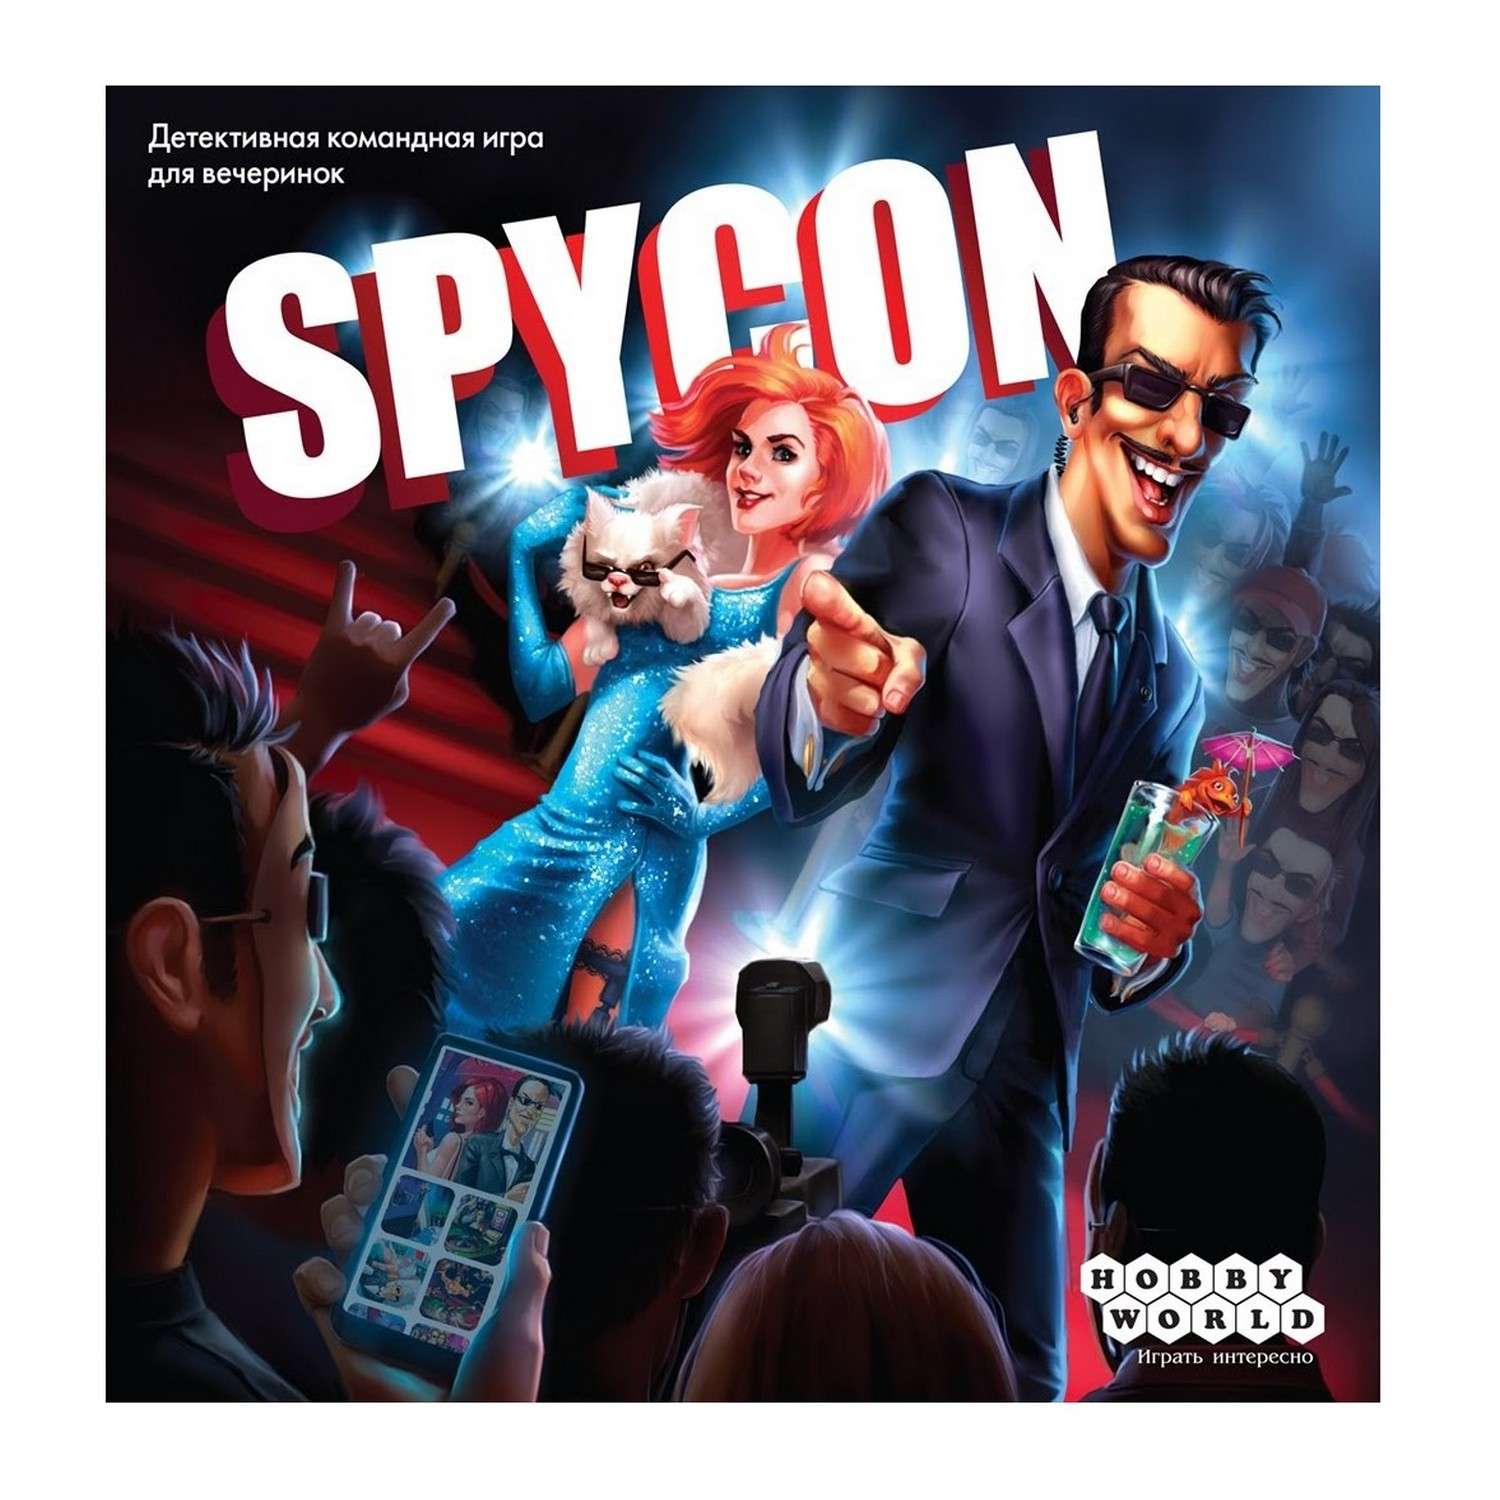 Игра настольная Hobby World Spycon 915164 - фото 1